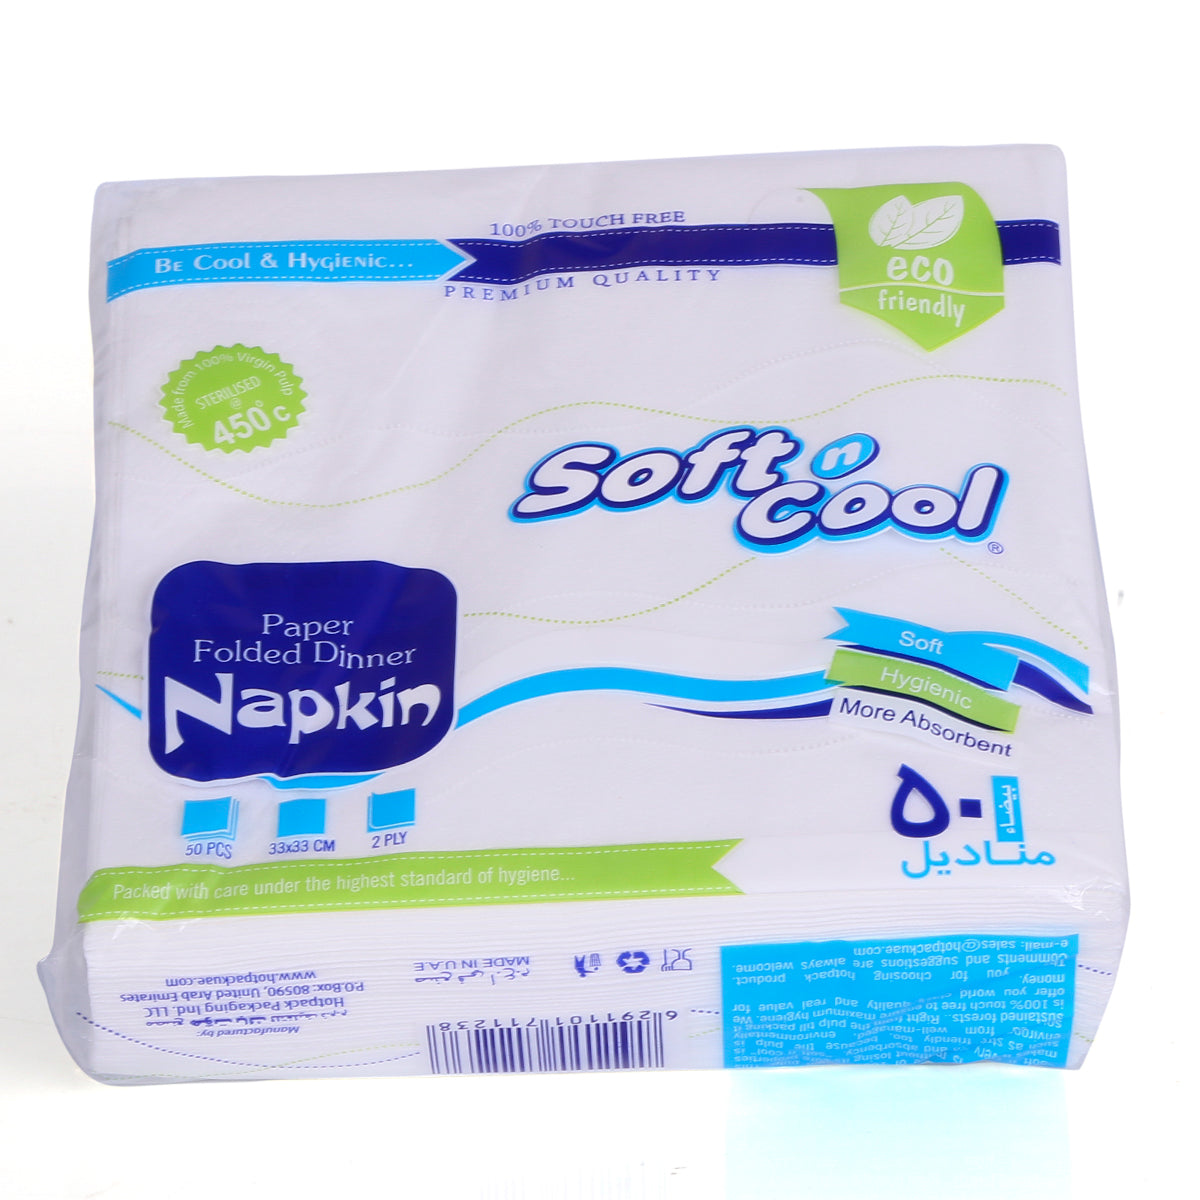 Soft N Cool Paper Folded Dinner Napkin 33 X 33 Cm